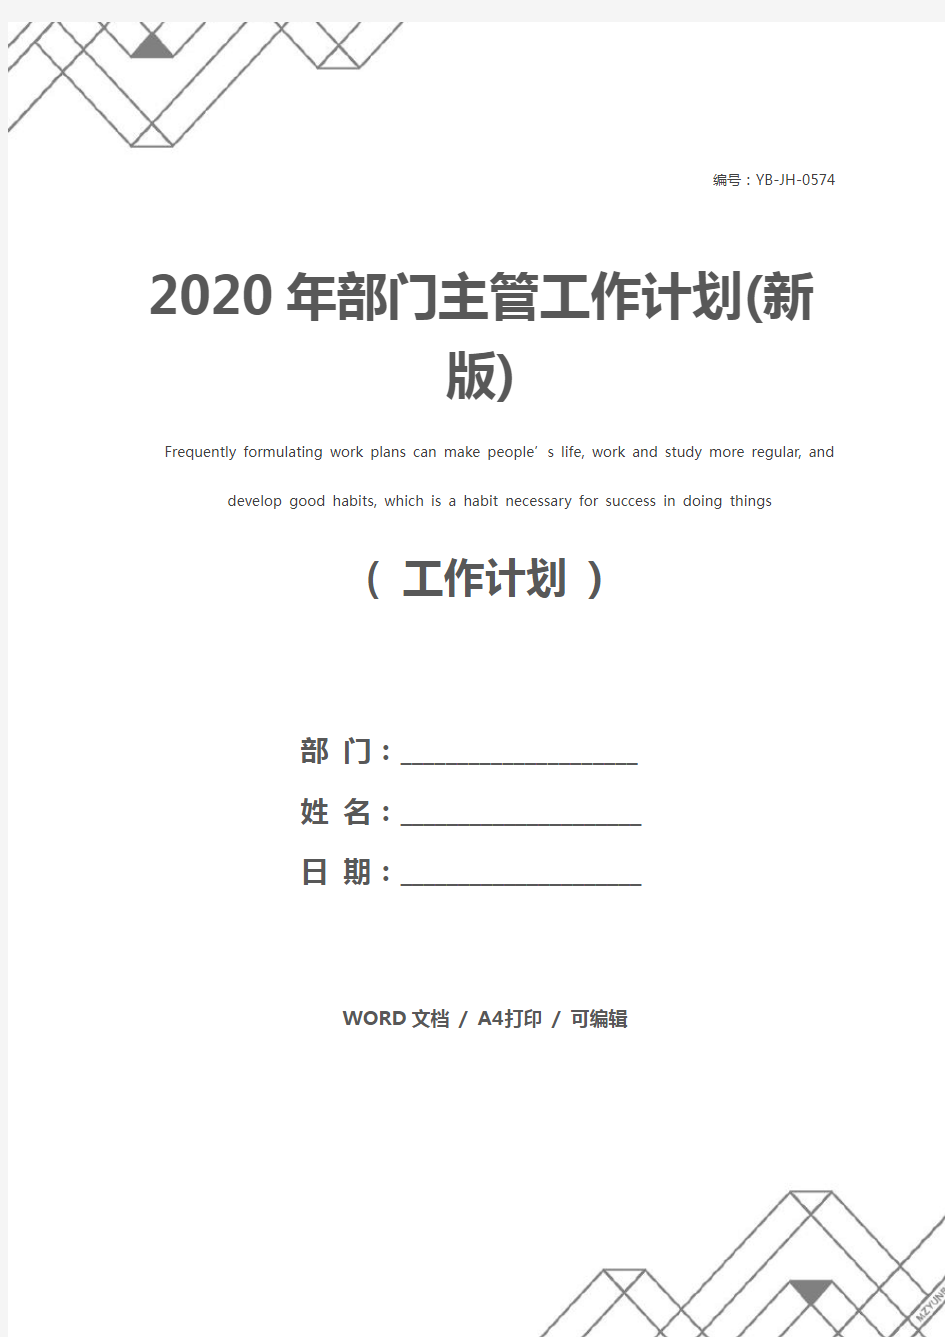 2020年部门主管工作计划(新版)